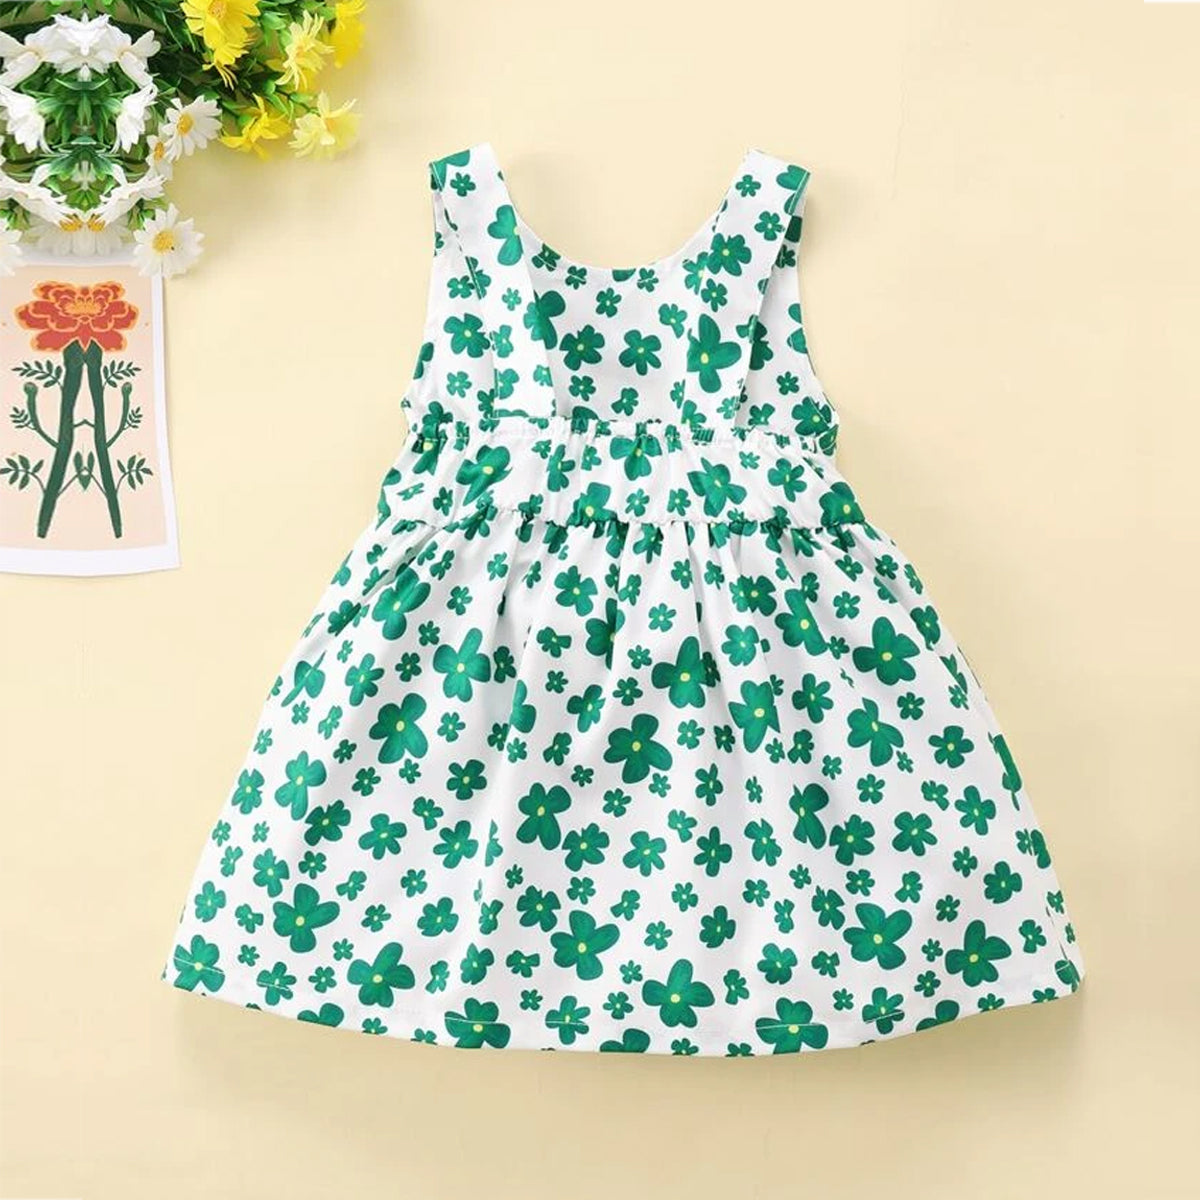 BabyGirl's Cotton Green Floral Frocks & Dresses for Kids.